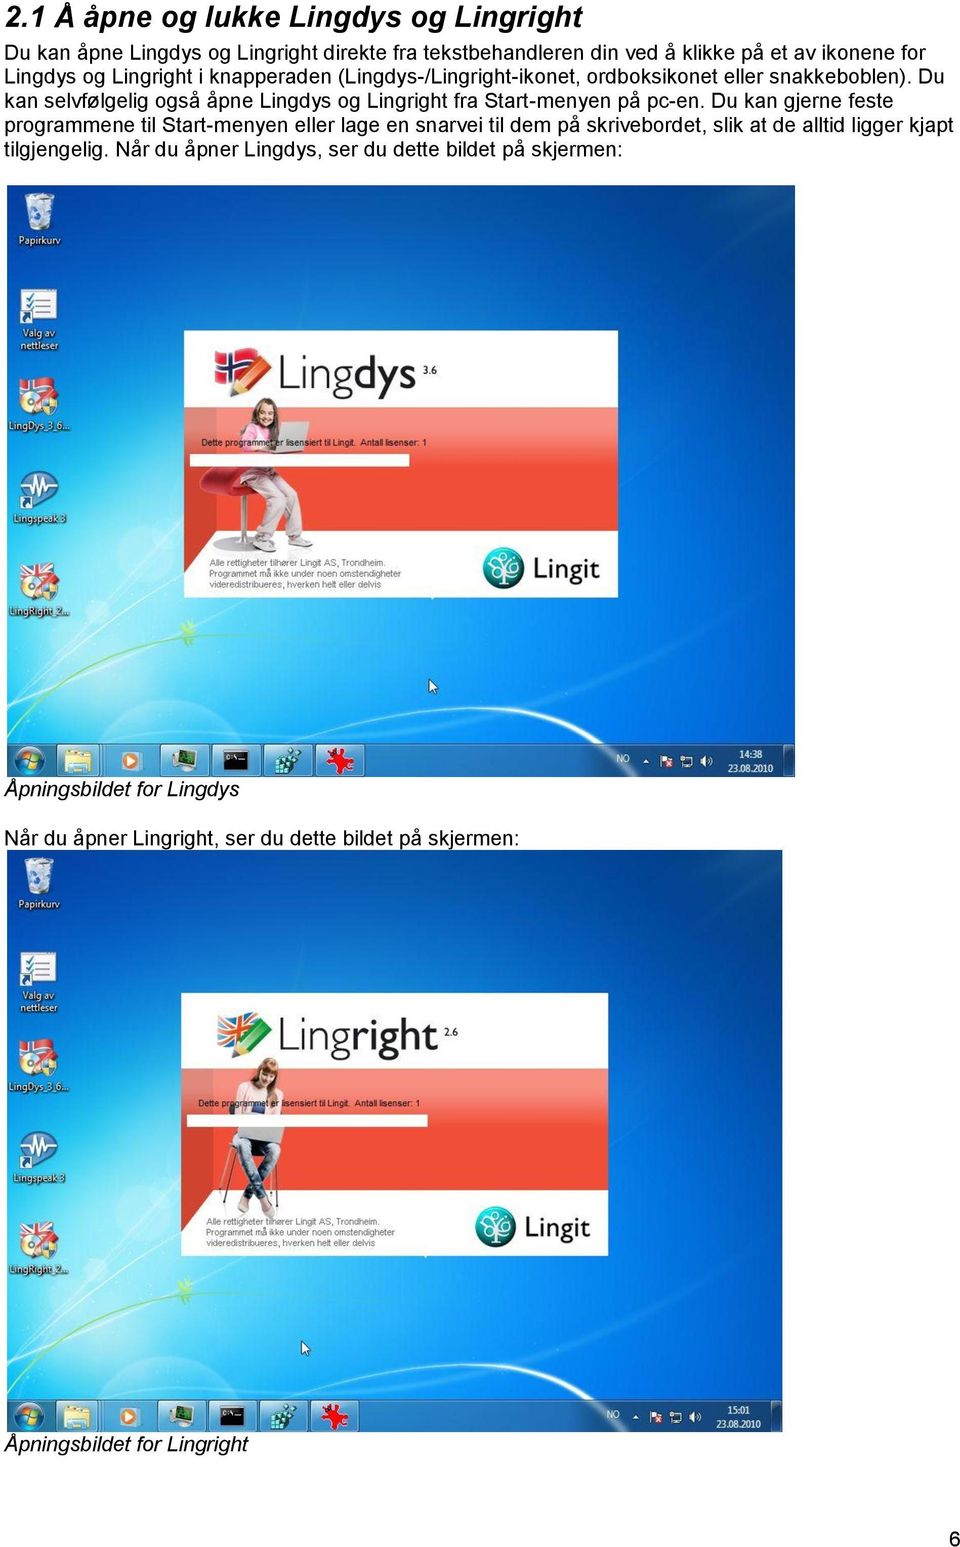 Du kan selvfølgelig også åpne Lingdys og Lingright fra Start-menyen på pc-en.